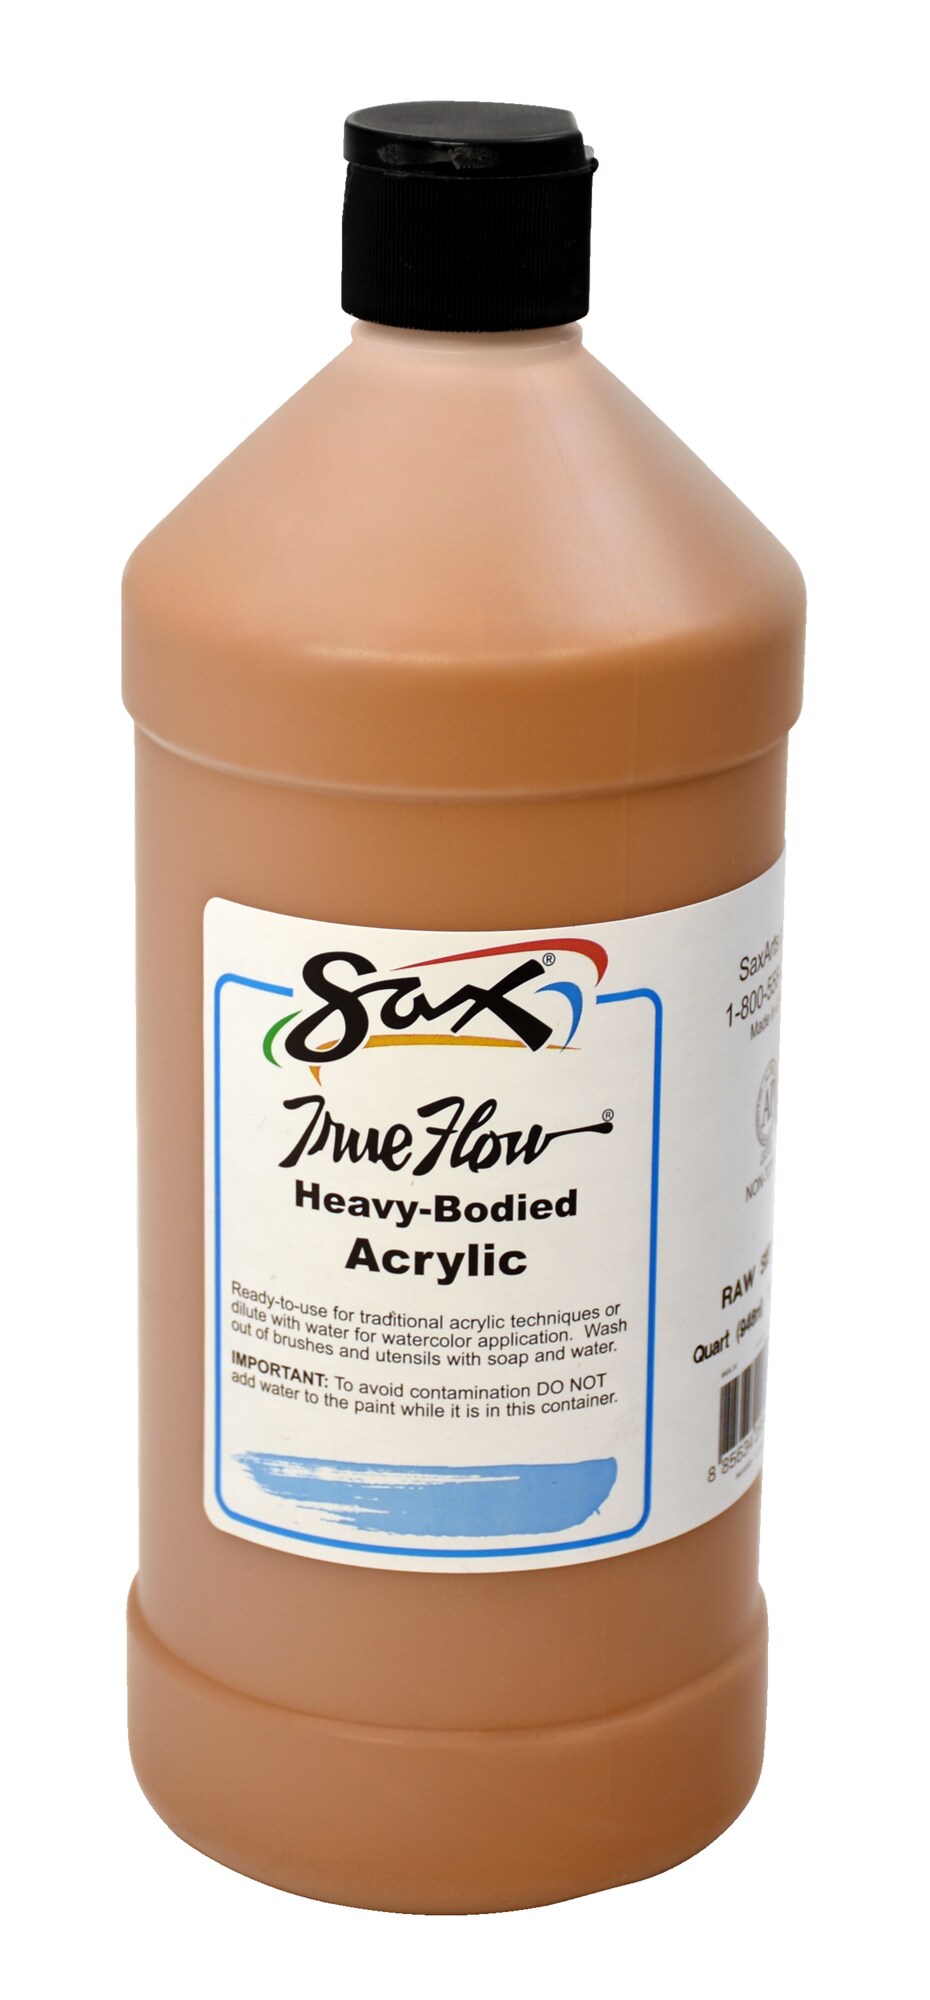 Sax True Flow Heavy Body Acrylic Paint, Raw Sienna, Quart : Target